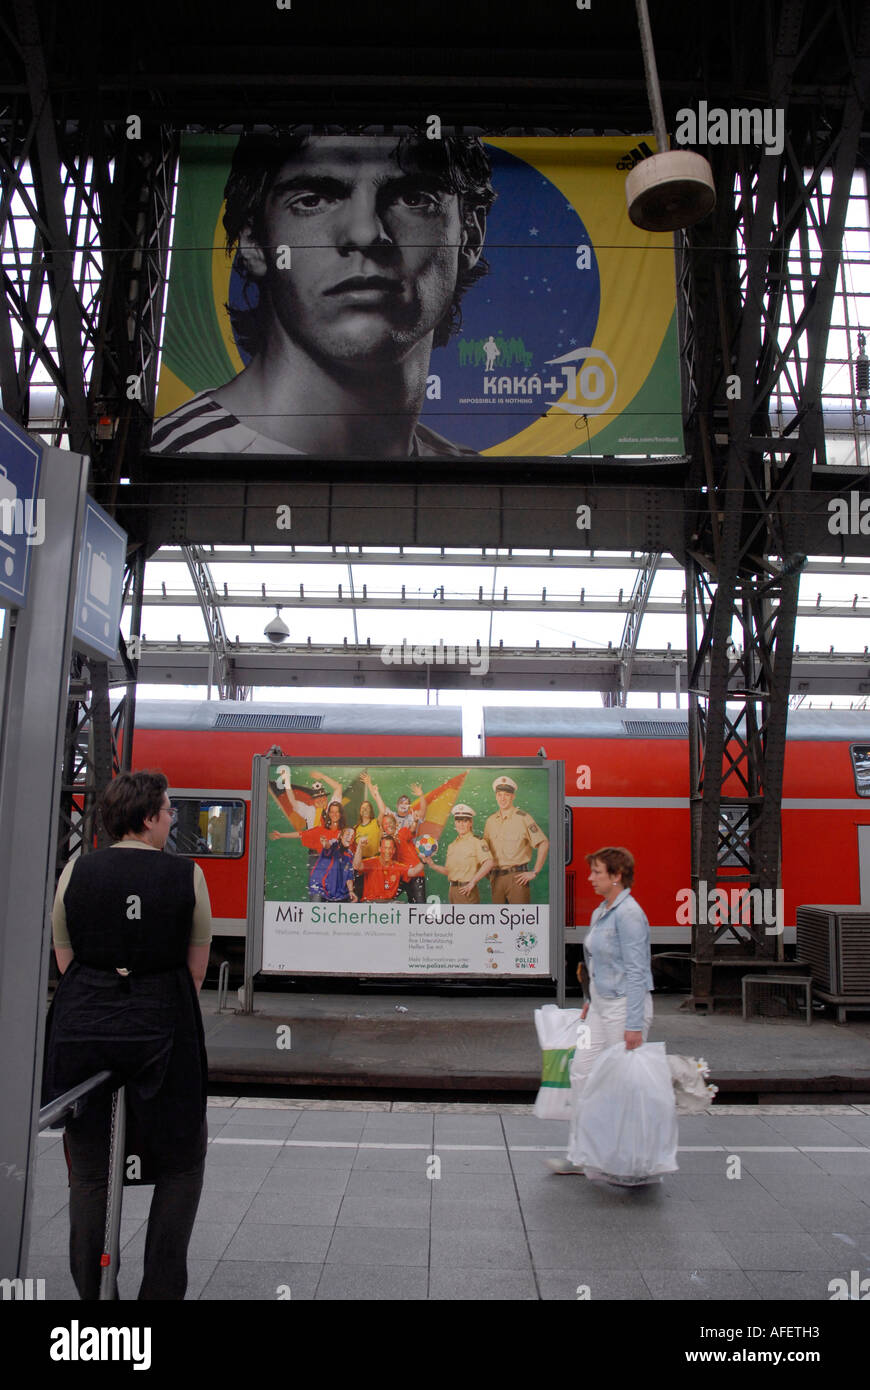 Menschen zu Fuß vorbei an einem Adidas-Poster mit Kaka der brasilianischen  Fußballer Köln Bahnhof 23. Juni 2006 Stockfotografie - Alamy